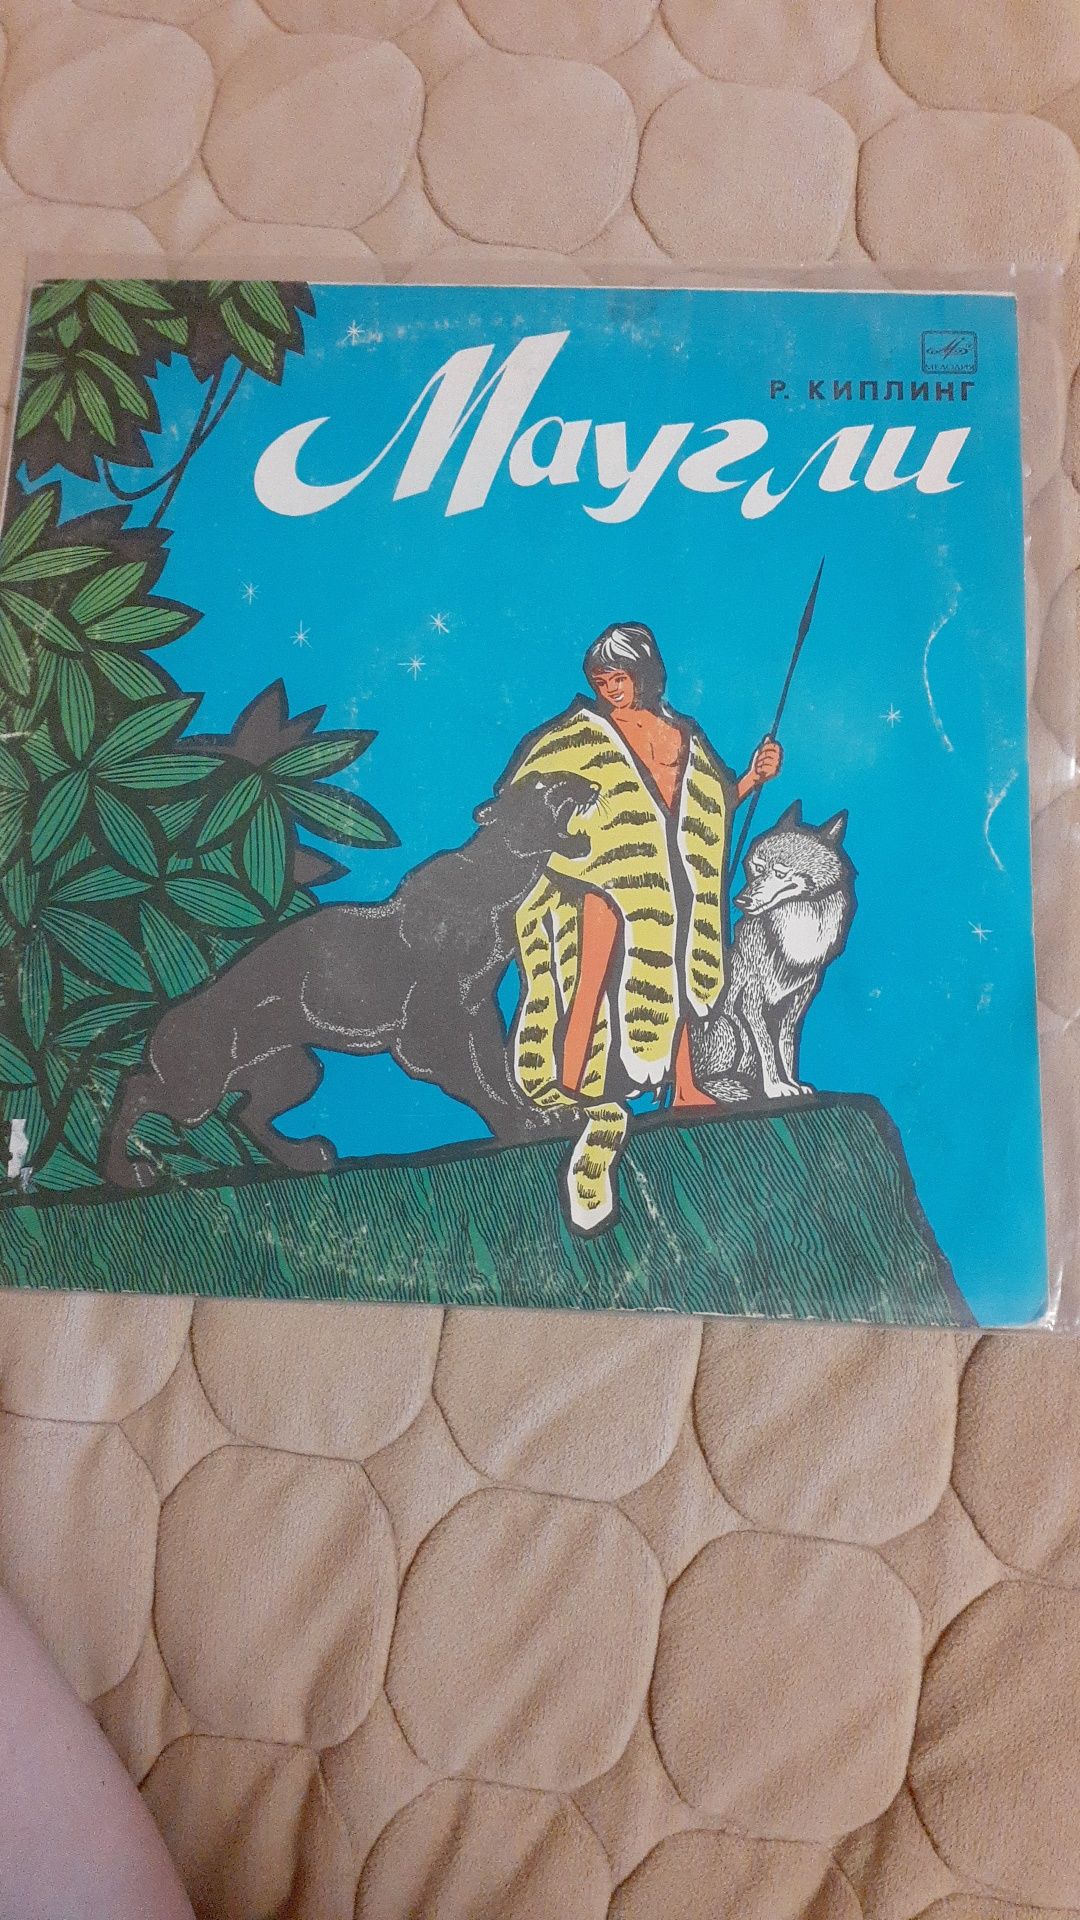 Коллекция сказок детских  на грампластинках времён СССР